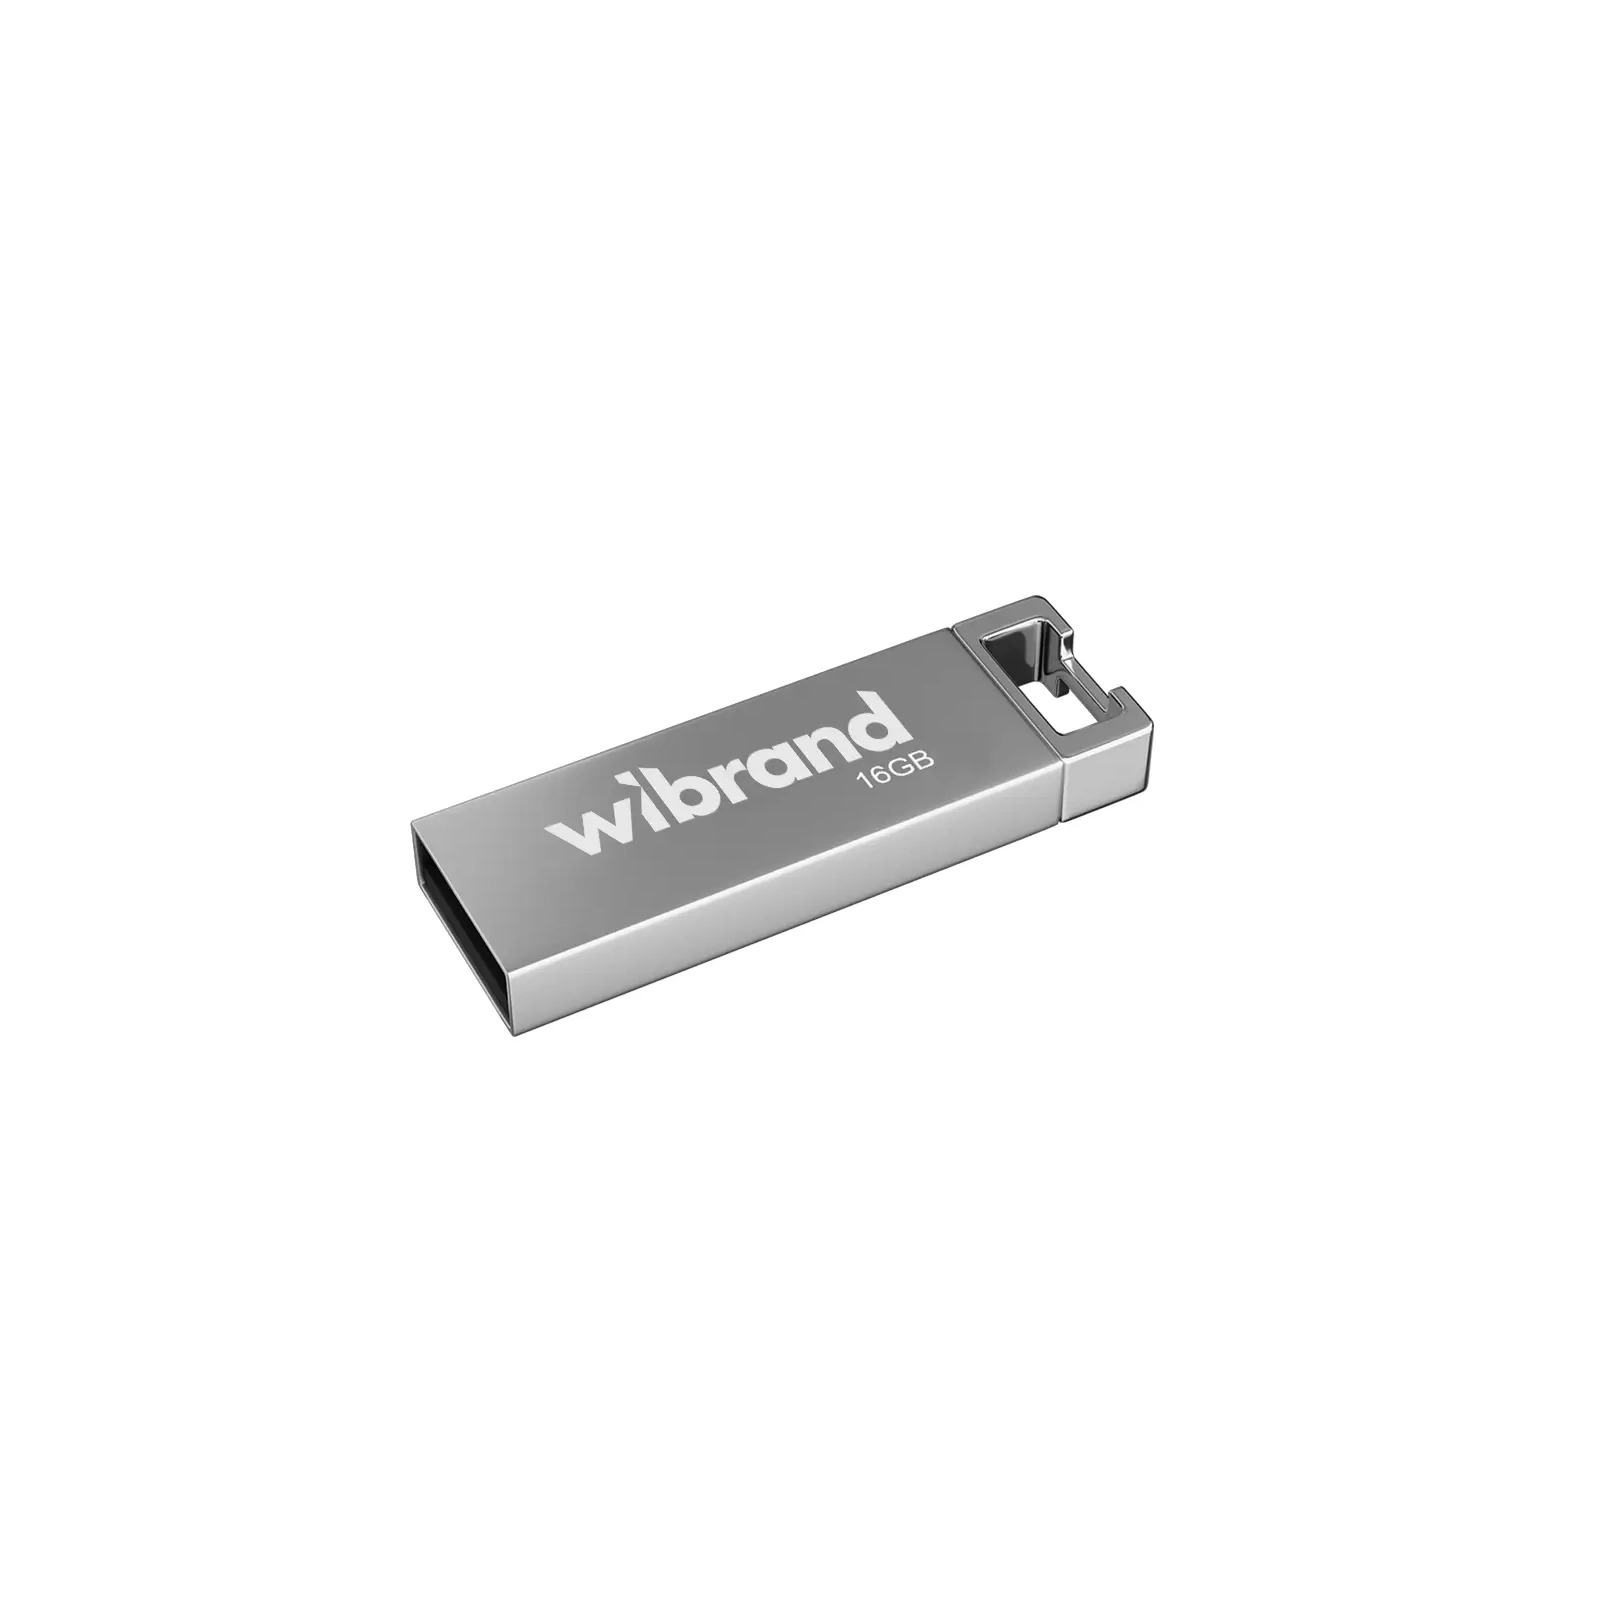 USB флеш накопитель Wibrand 16GB Chameleon Green USB 2.0 (WI2.0/CH16U6LG)